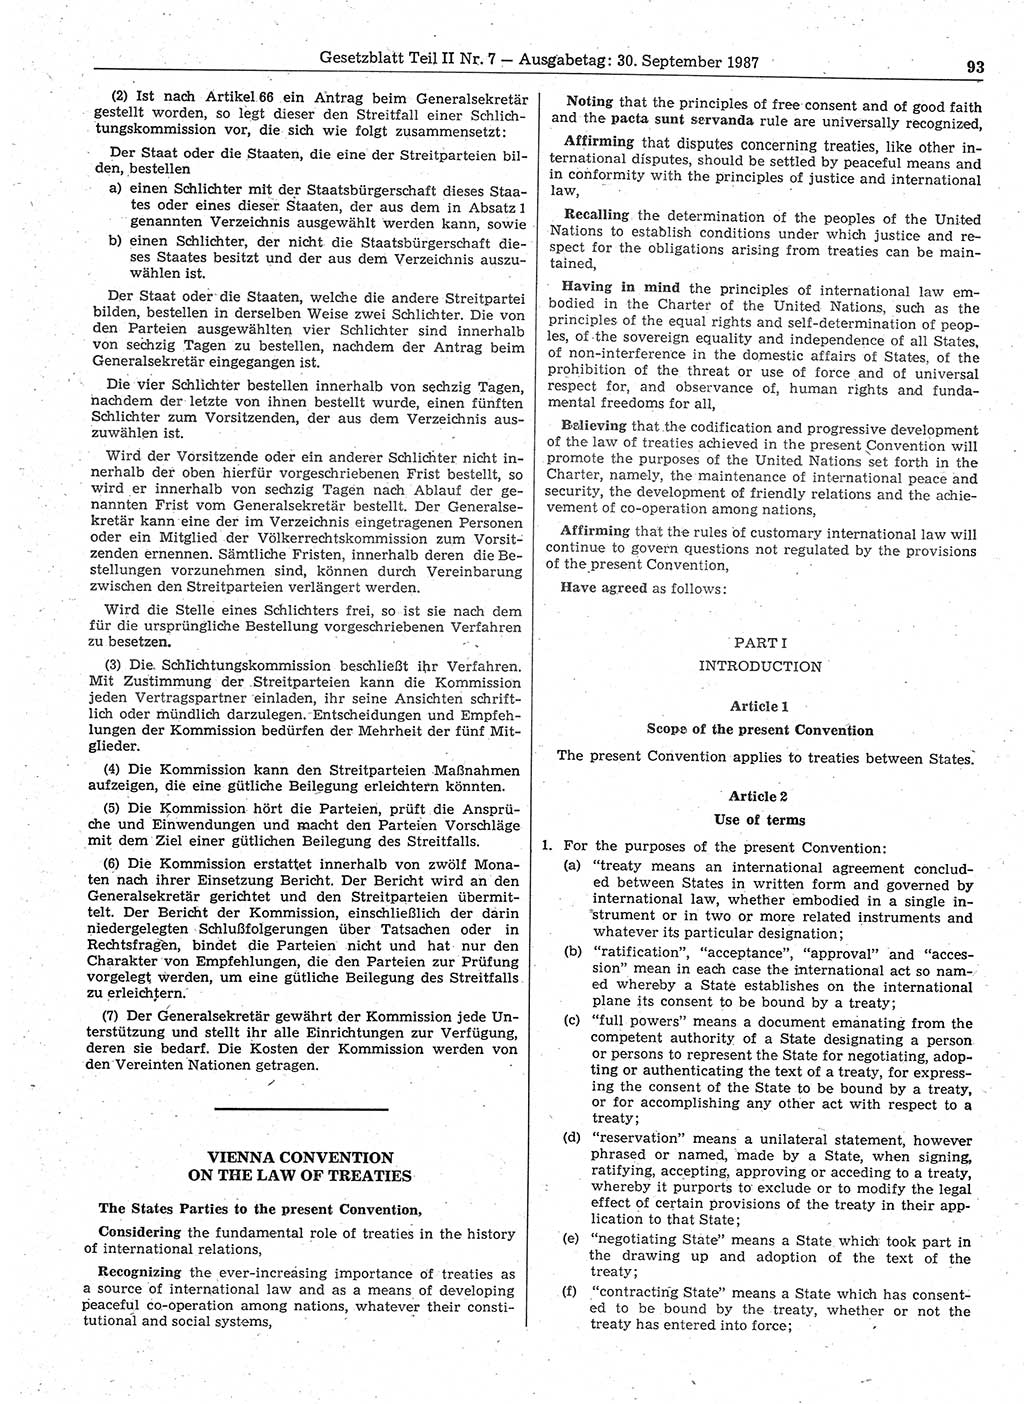 Gesetzblatt (GBl.) der Deutschen Demokratischen Republik (DDR) Teil ⅠⅠ 1987, Seite 93 (GBl. DDR ⅠⅠ 1987, S. 93)